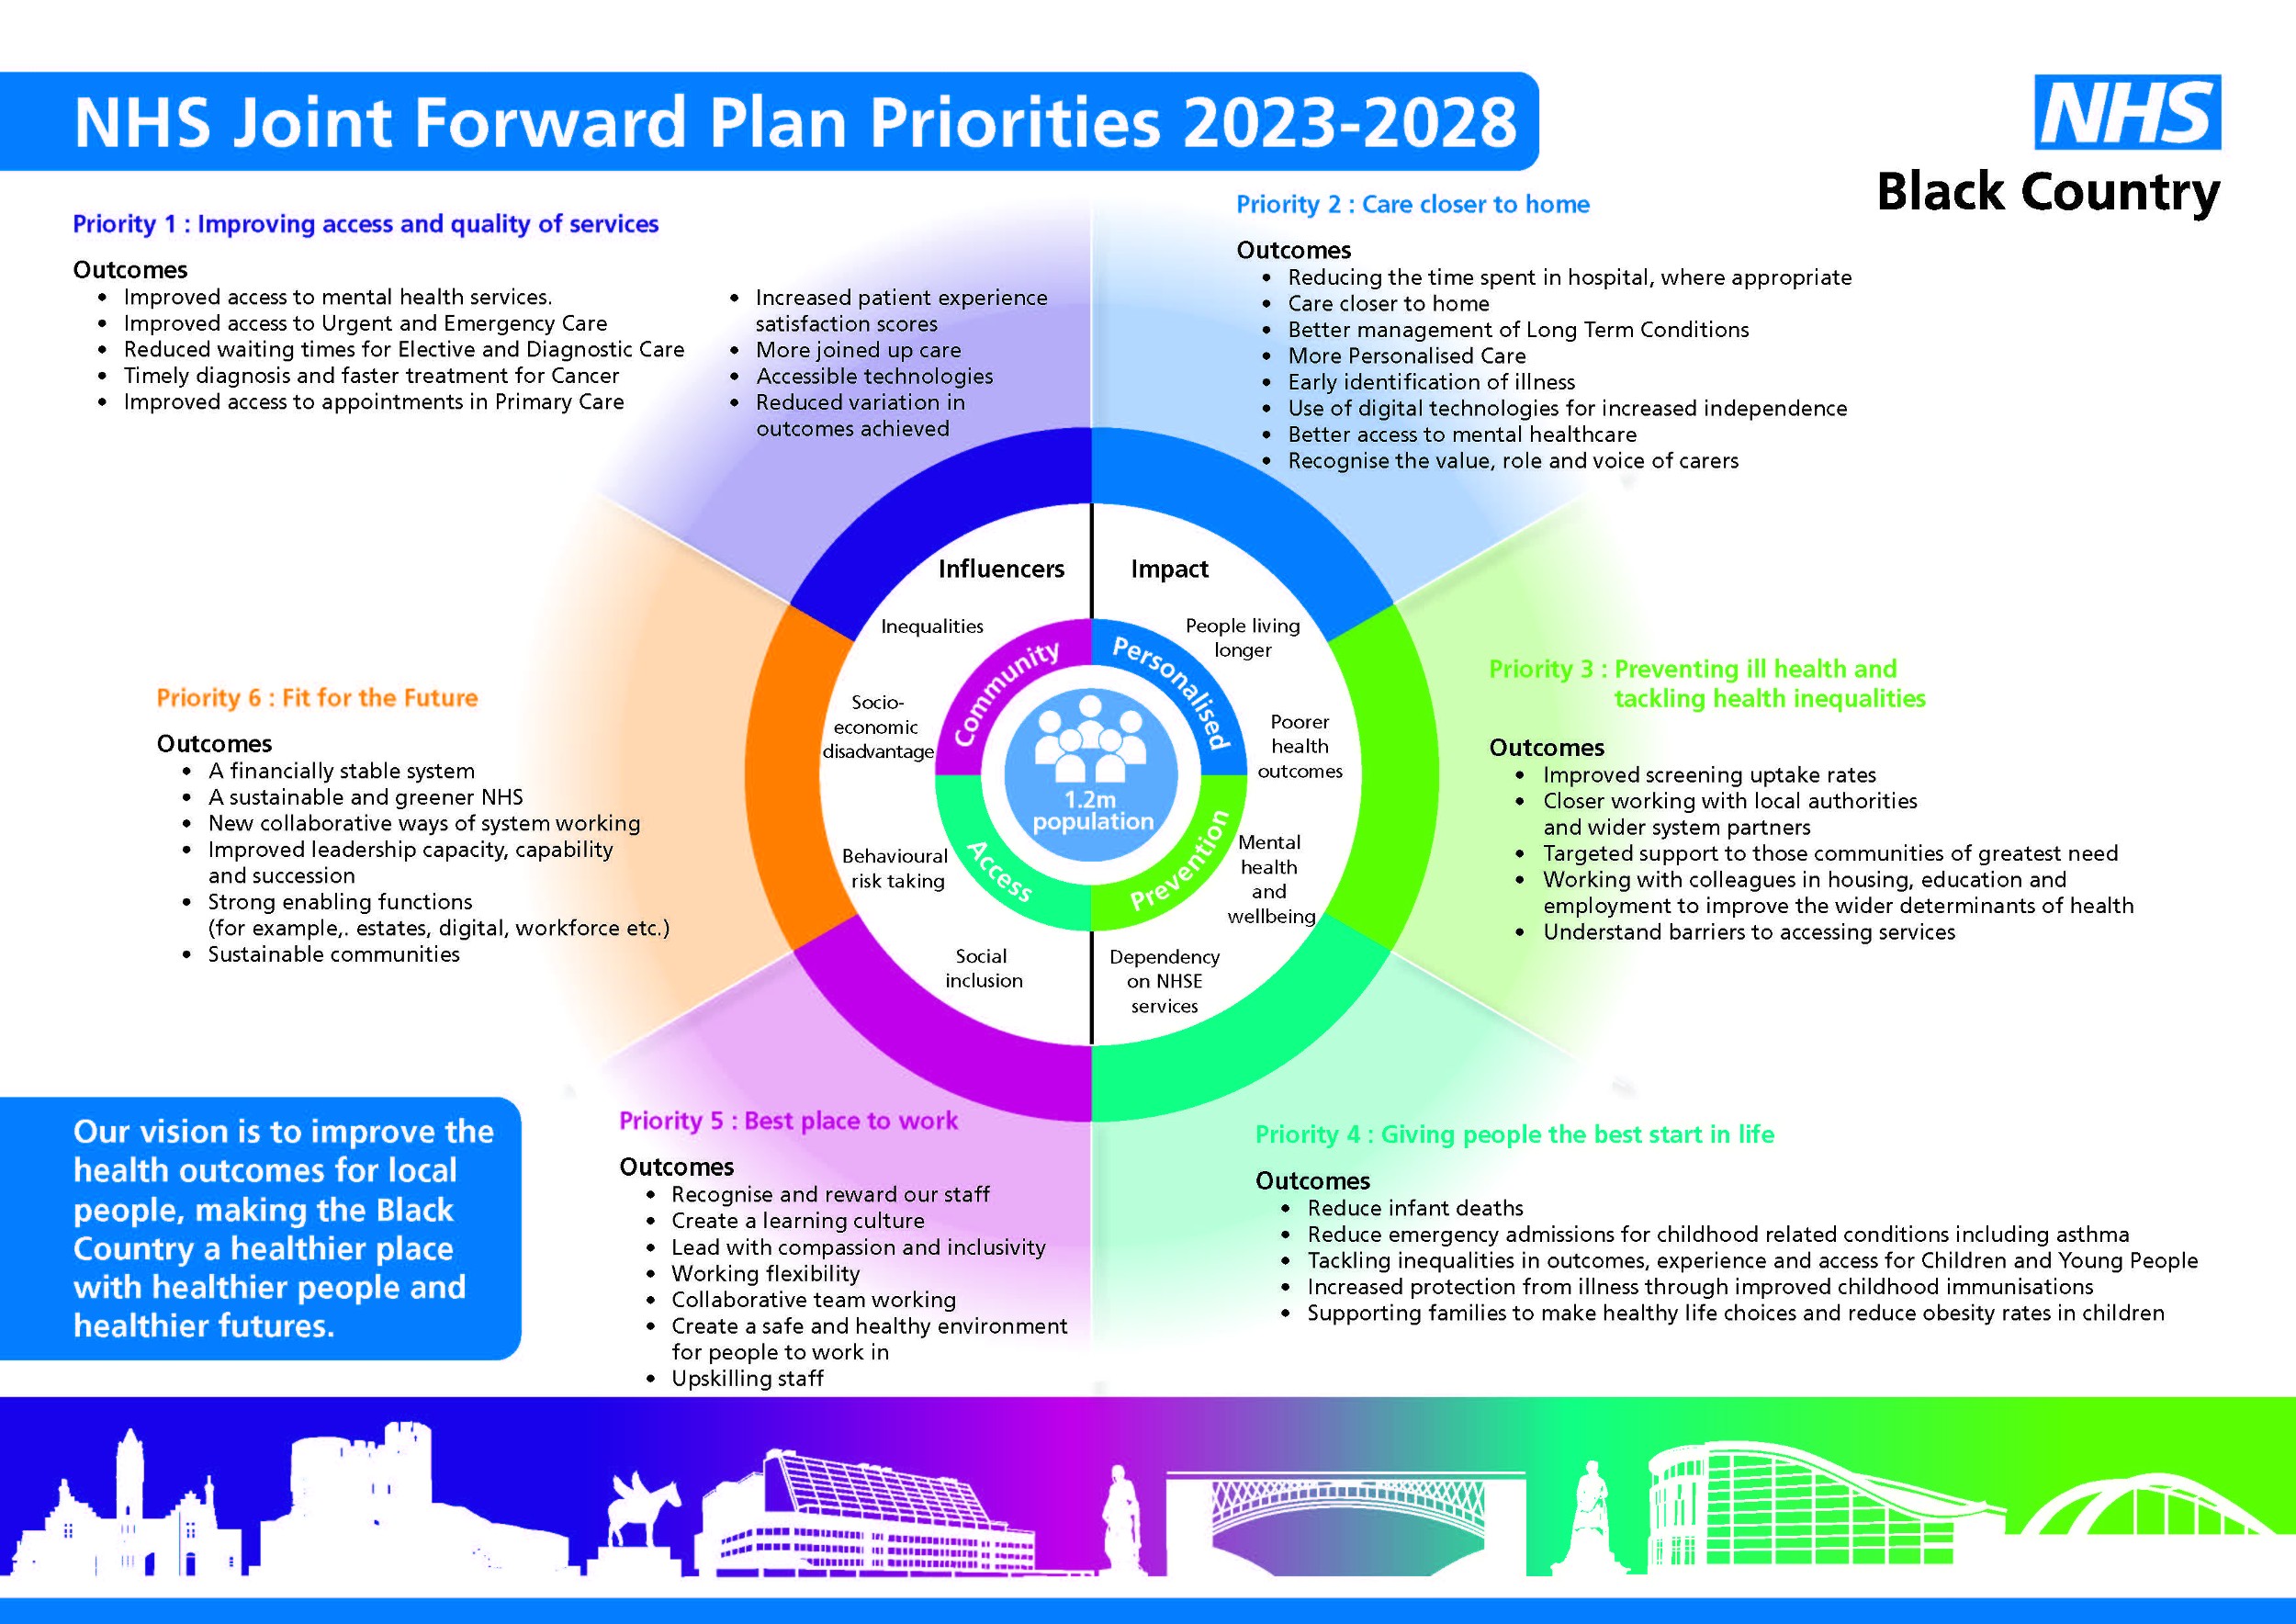 NHS Joint Forward Plan Priorities image.jpg